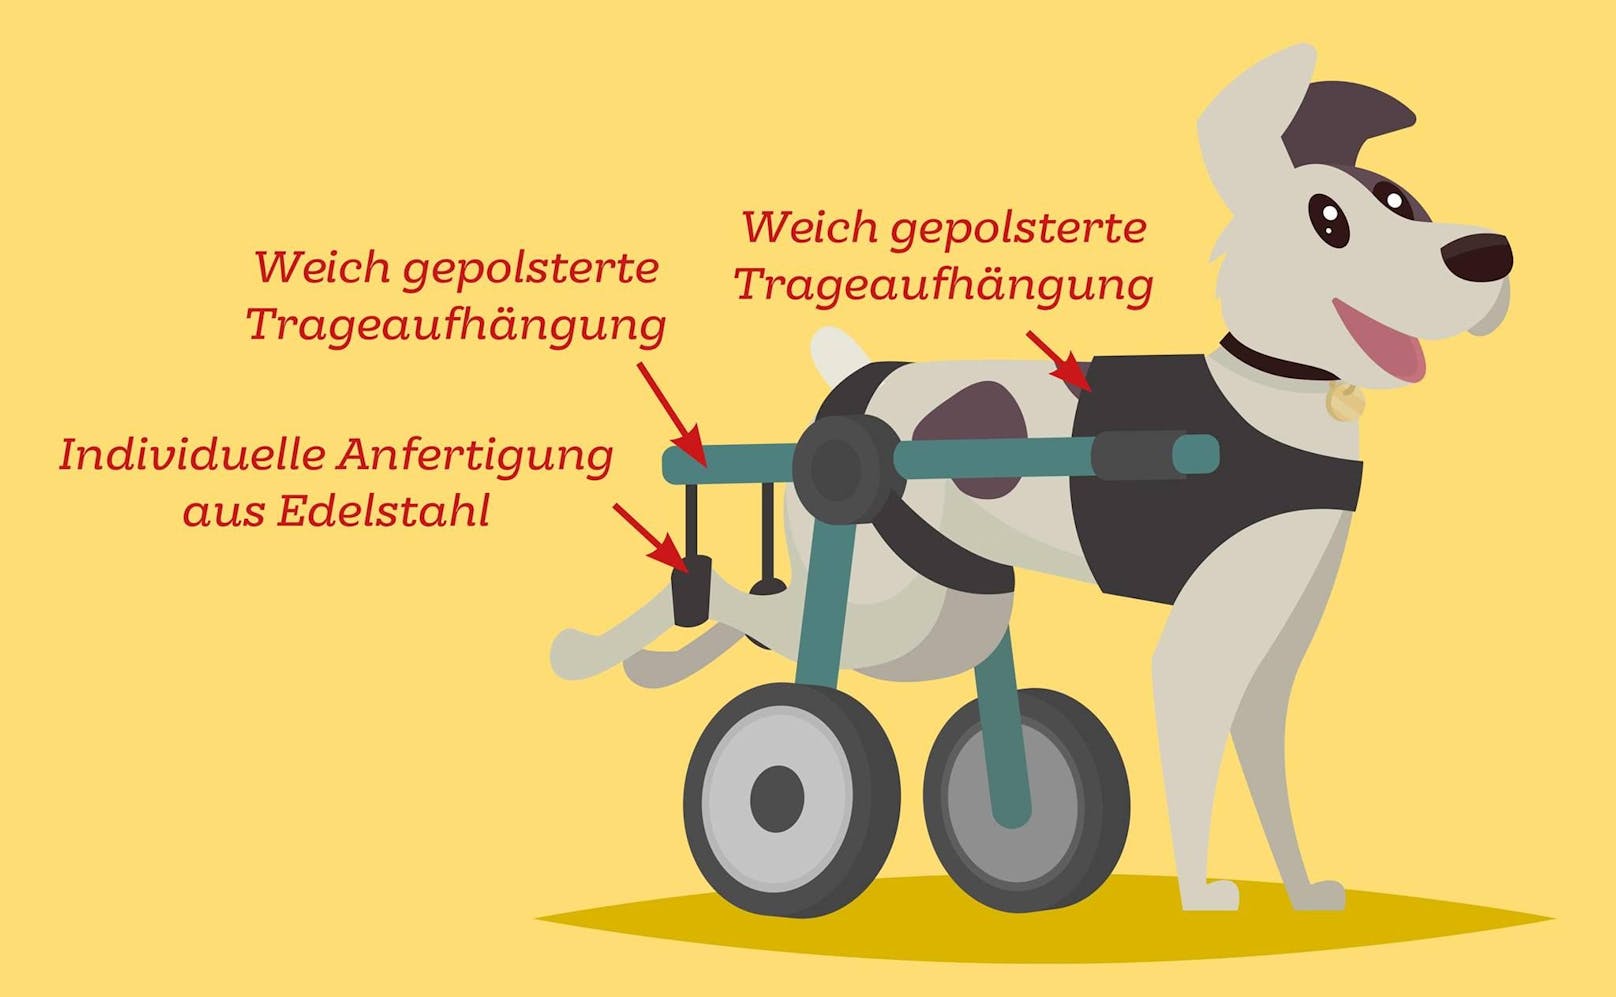 In Wien werden die Gehhilfen für Hunde von einer Frau angefertigt.